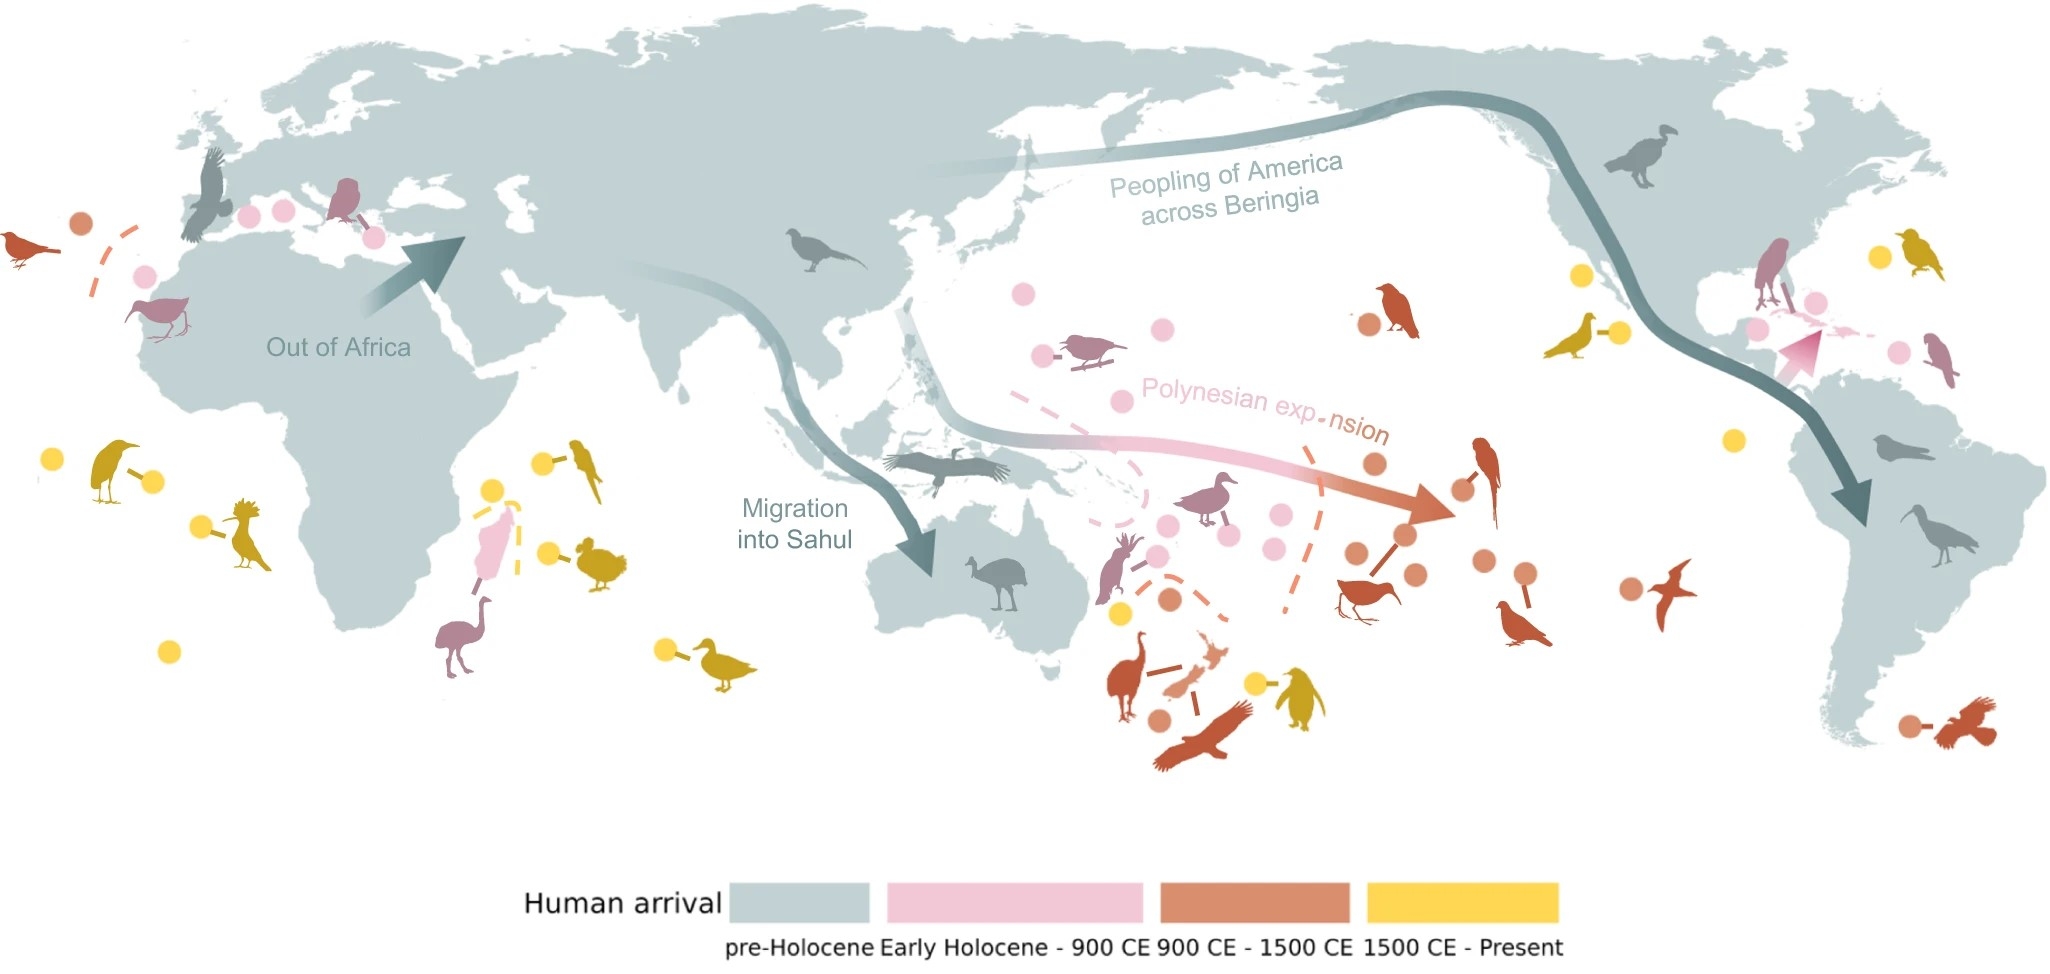 Hình: Sự mở rộng của con người trên toàn hành tinh được phân loại thành bốn làn sóng chính (xem chú thích; Hình 1 bổ sung). Các tuyến đường phân tán chính của con người được chỉ ra bằng mũi tên, và hình bóng cho thấy các ví dụ về hóa thạch (trước thời kỳ Holocene - 1500 CE) và sự tuyệt chủng chim được quan sát (1500 CE - Hiện tại). Bốn tuyến đường phân tán chính của con người là: 1) Di cư ra khỏi Châu Phi (Out of Africa), 2) Di cư vào thềm Sahul, hay Lục địa Úc (Migration into Sahul), 3) Sự mở rộng ra Polynesia, một phân vùng với trên 1000 đảo ở Châu Đại Dương (Polynesian expansion), và 4) Sự mở rộng sang Châu Mỹ thông qua Cầu đất liền Bering (Peopling of America across Beringia). Nguồn: https://www.nature.com/articles/s41467-023-43445-2/figures/1